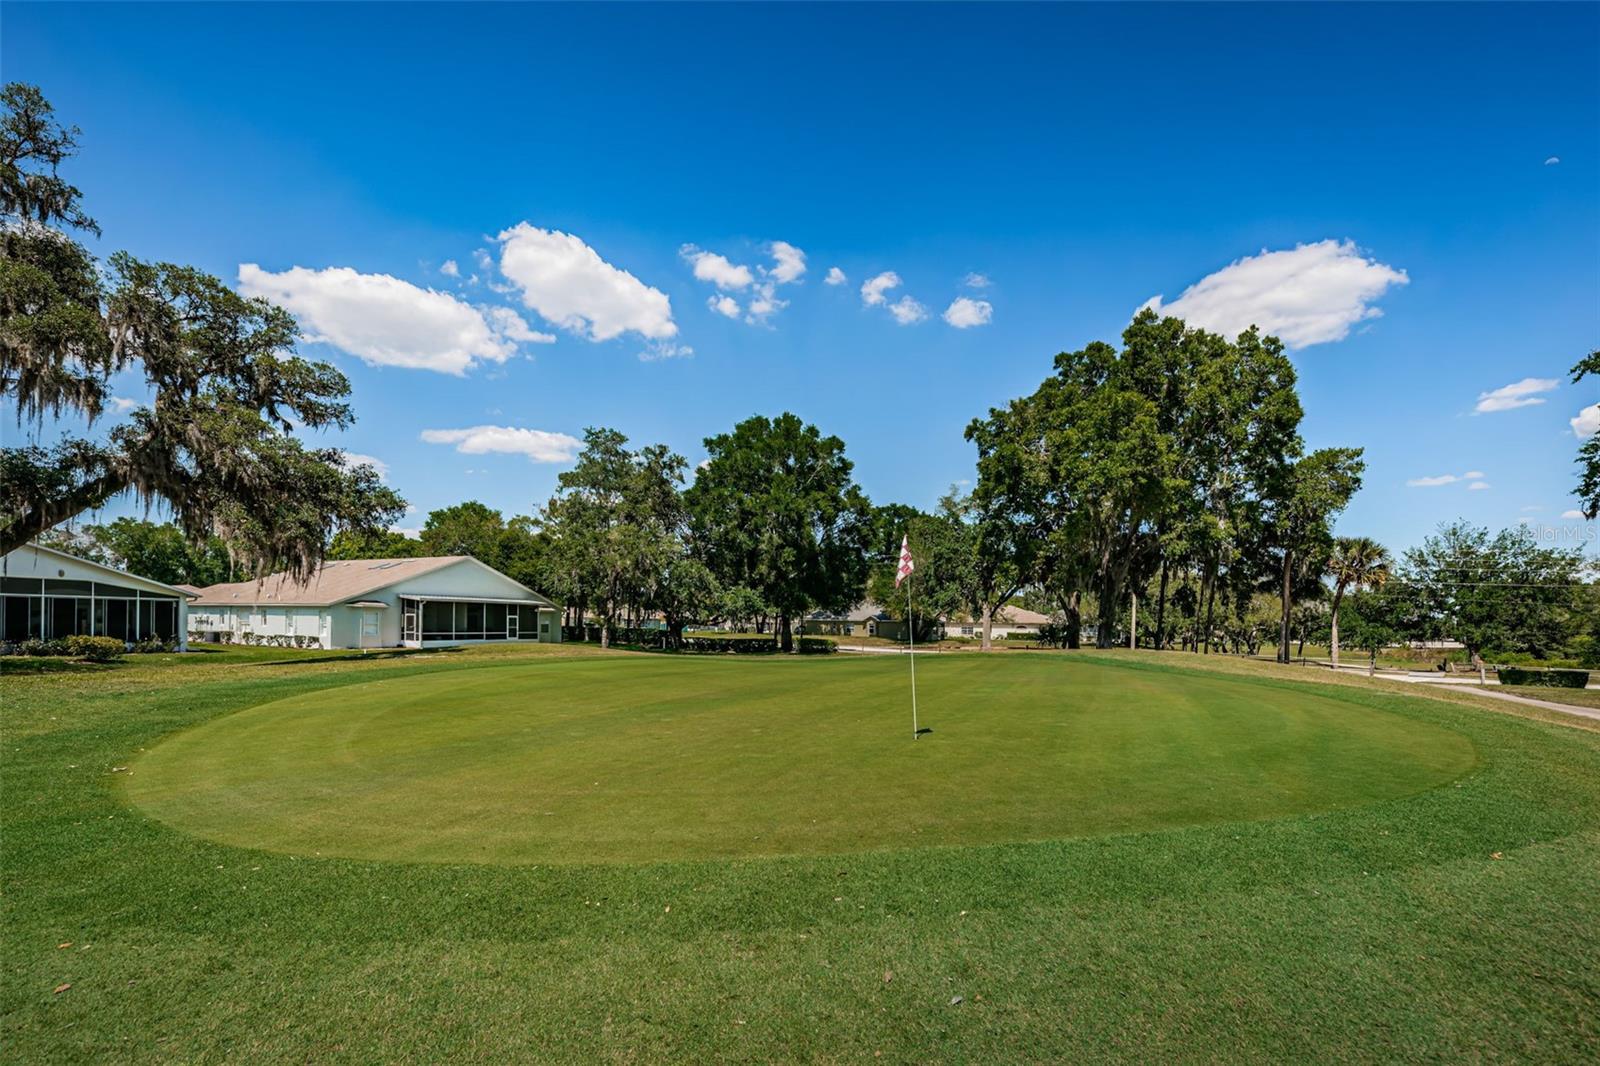 Meadow Oaks golf course